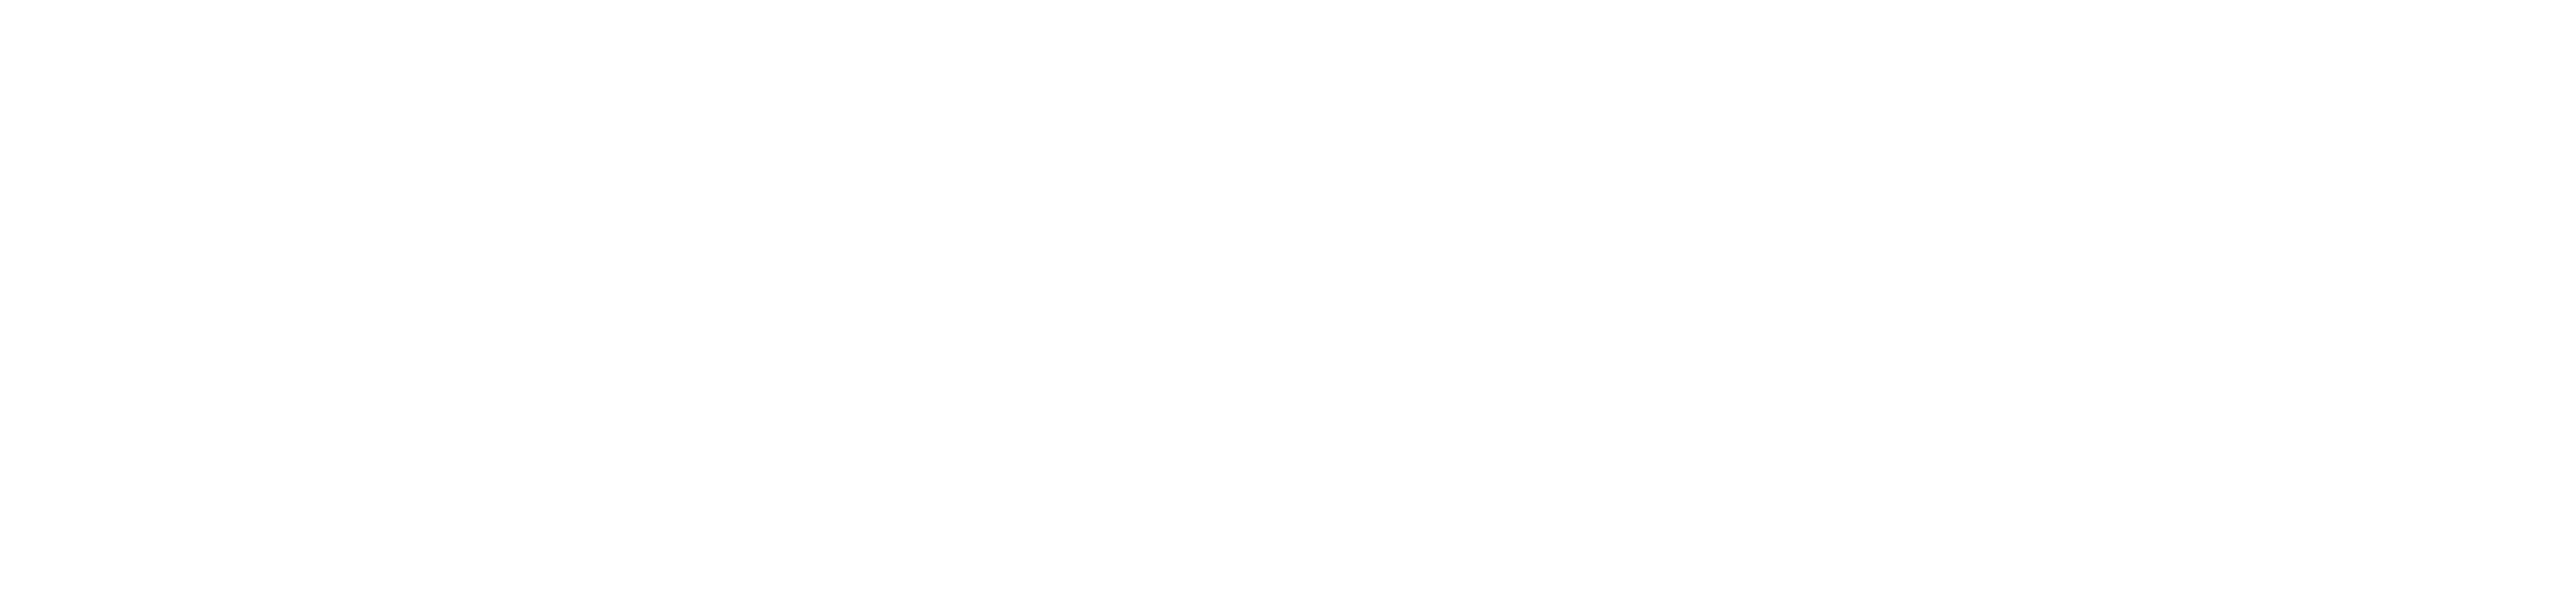 Epique-Logo-FINAL-white